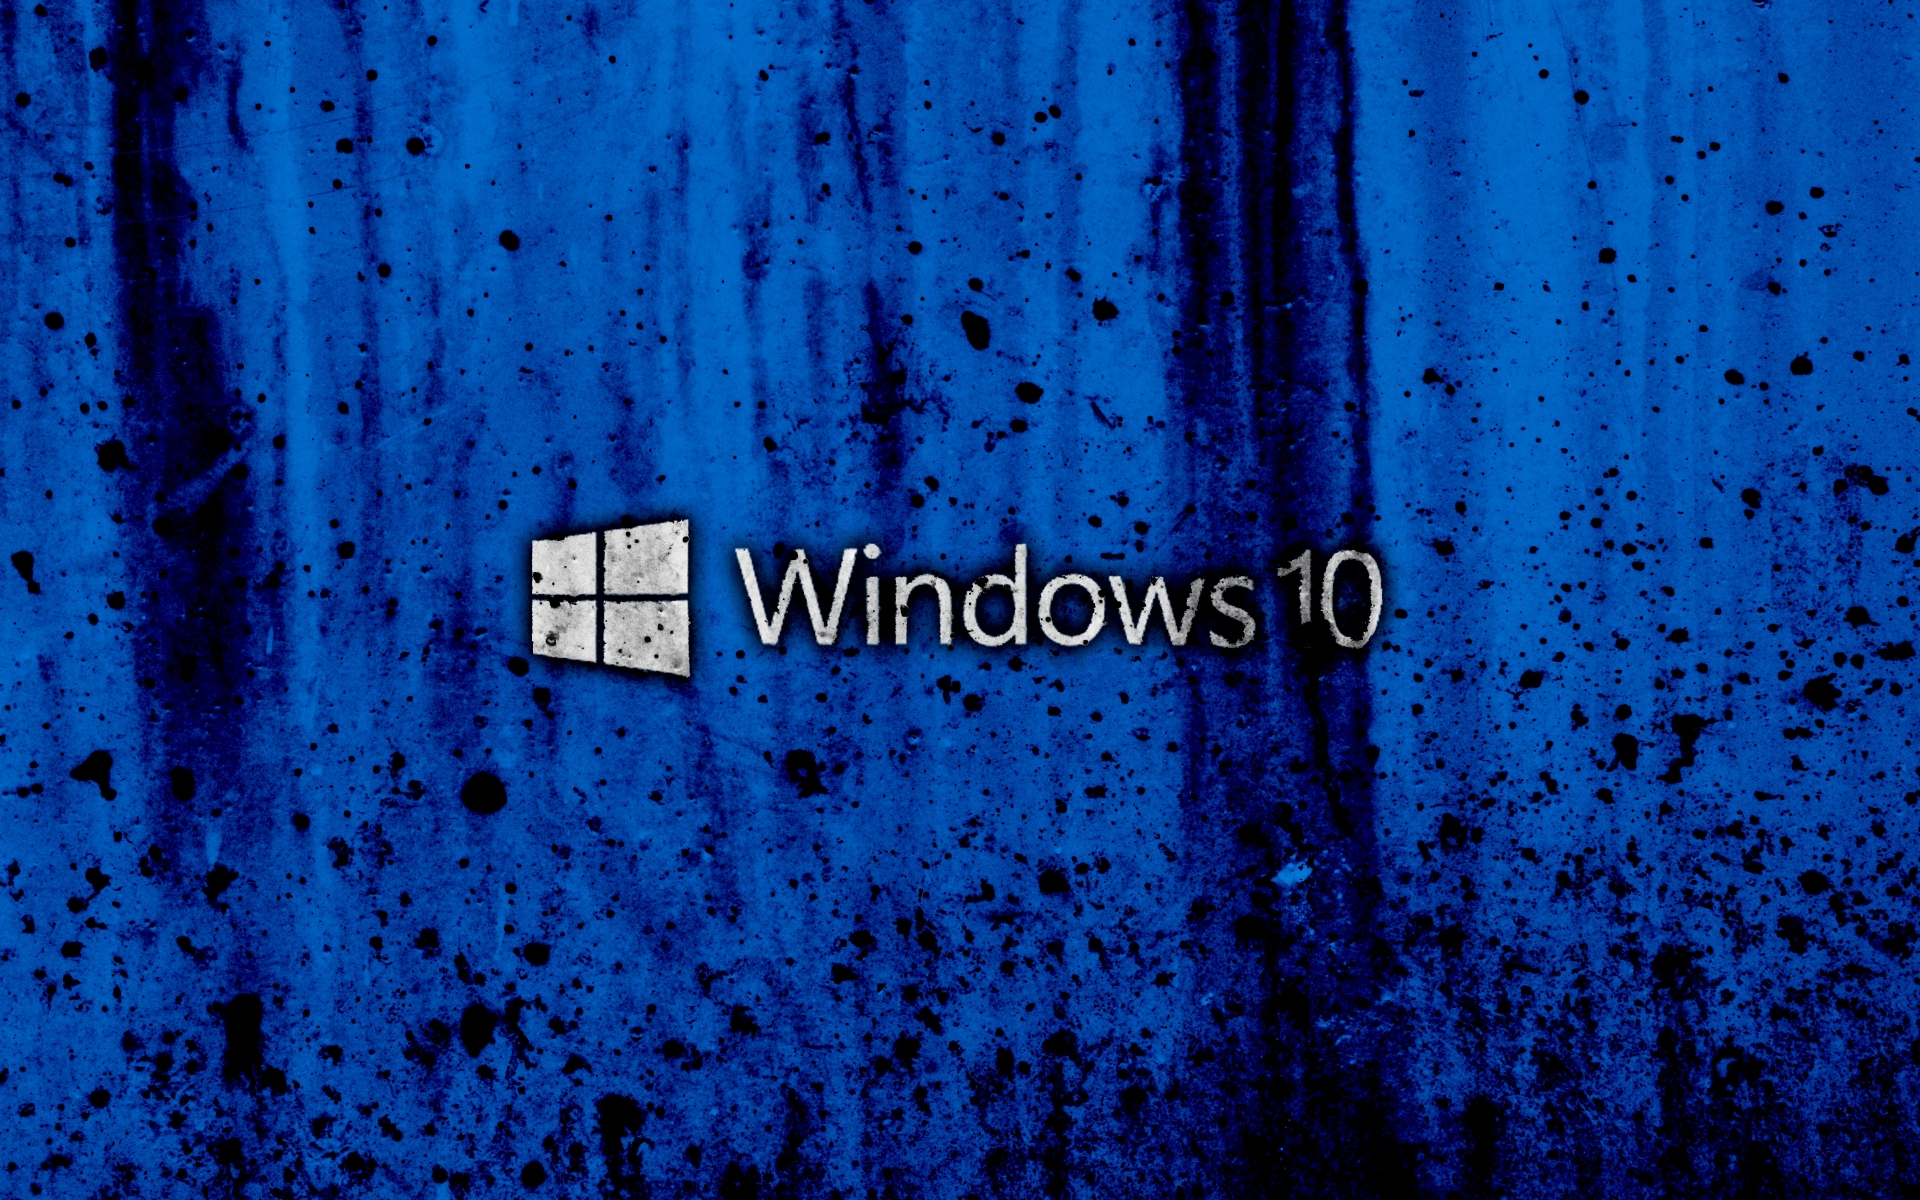 grunge-blue-background-logo-creative-windows 10-1920x1200.jpg